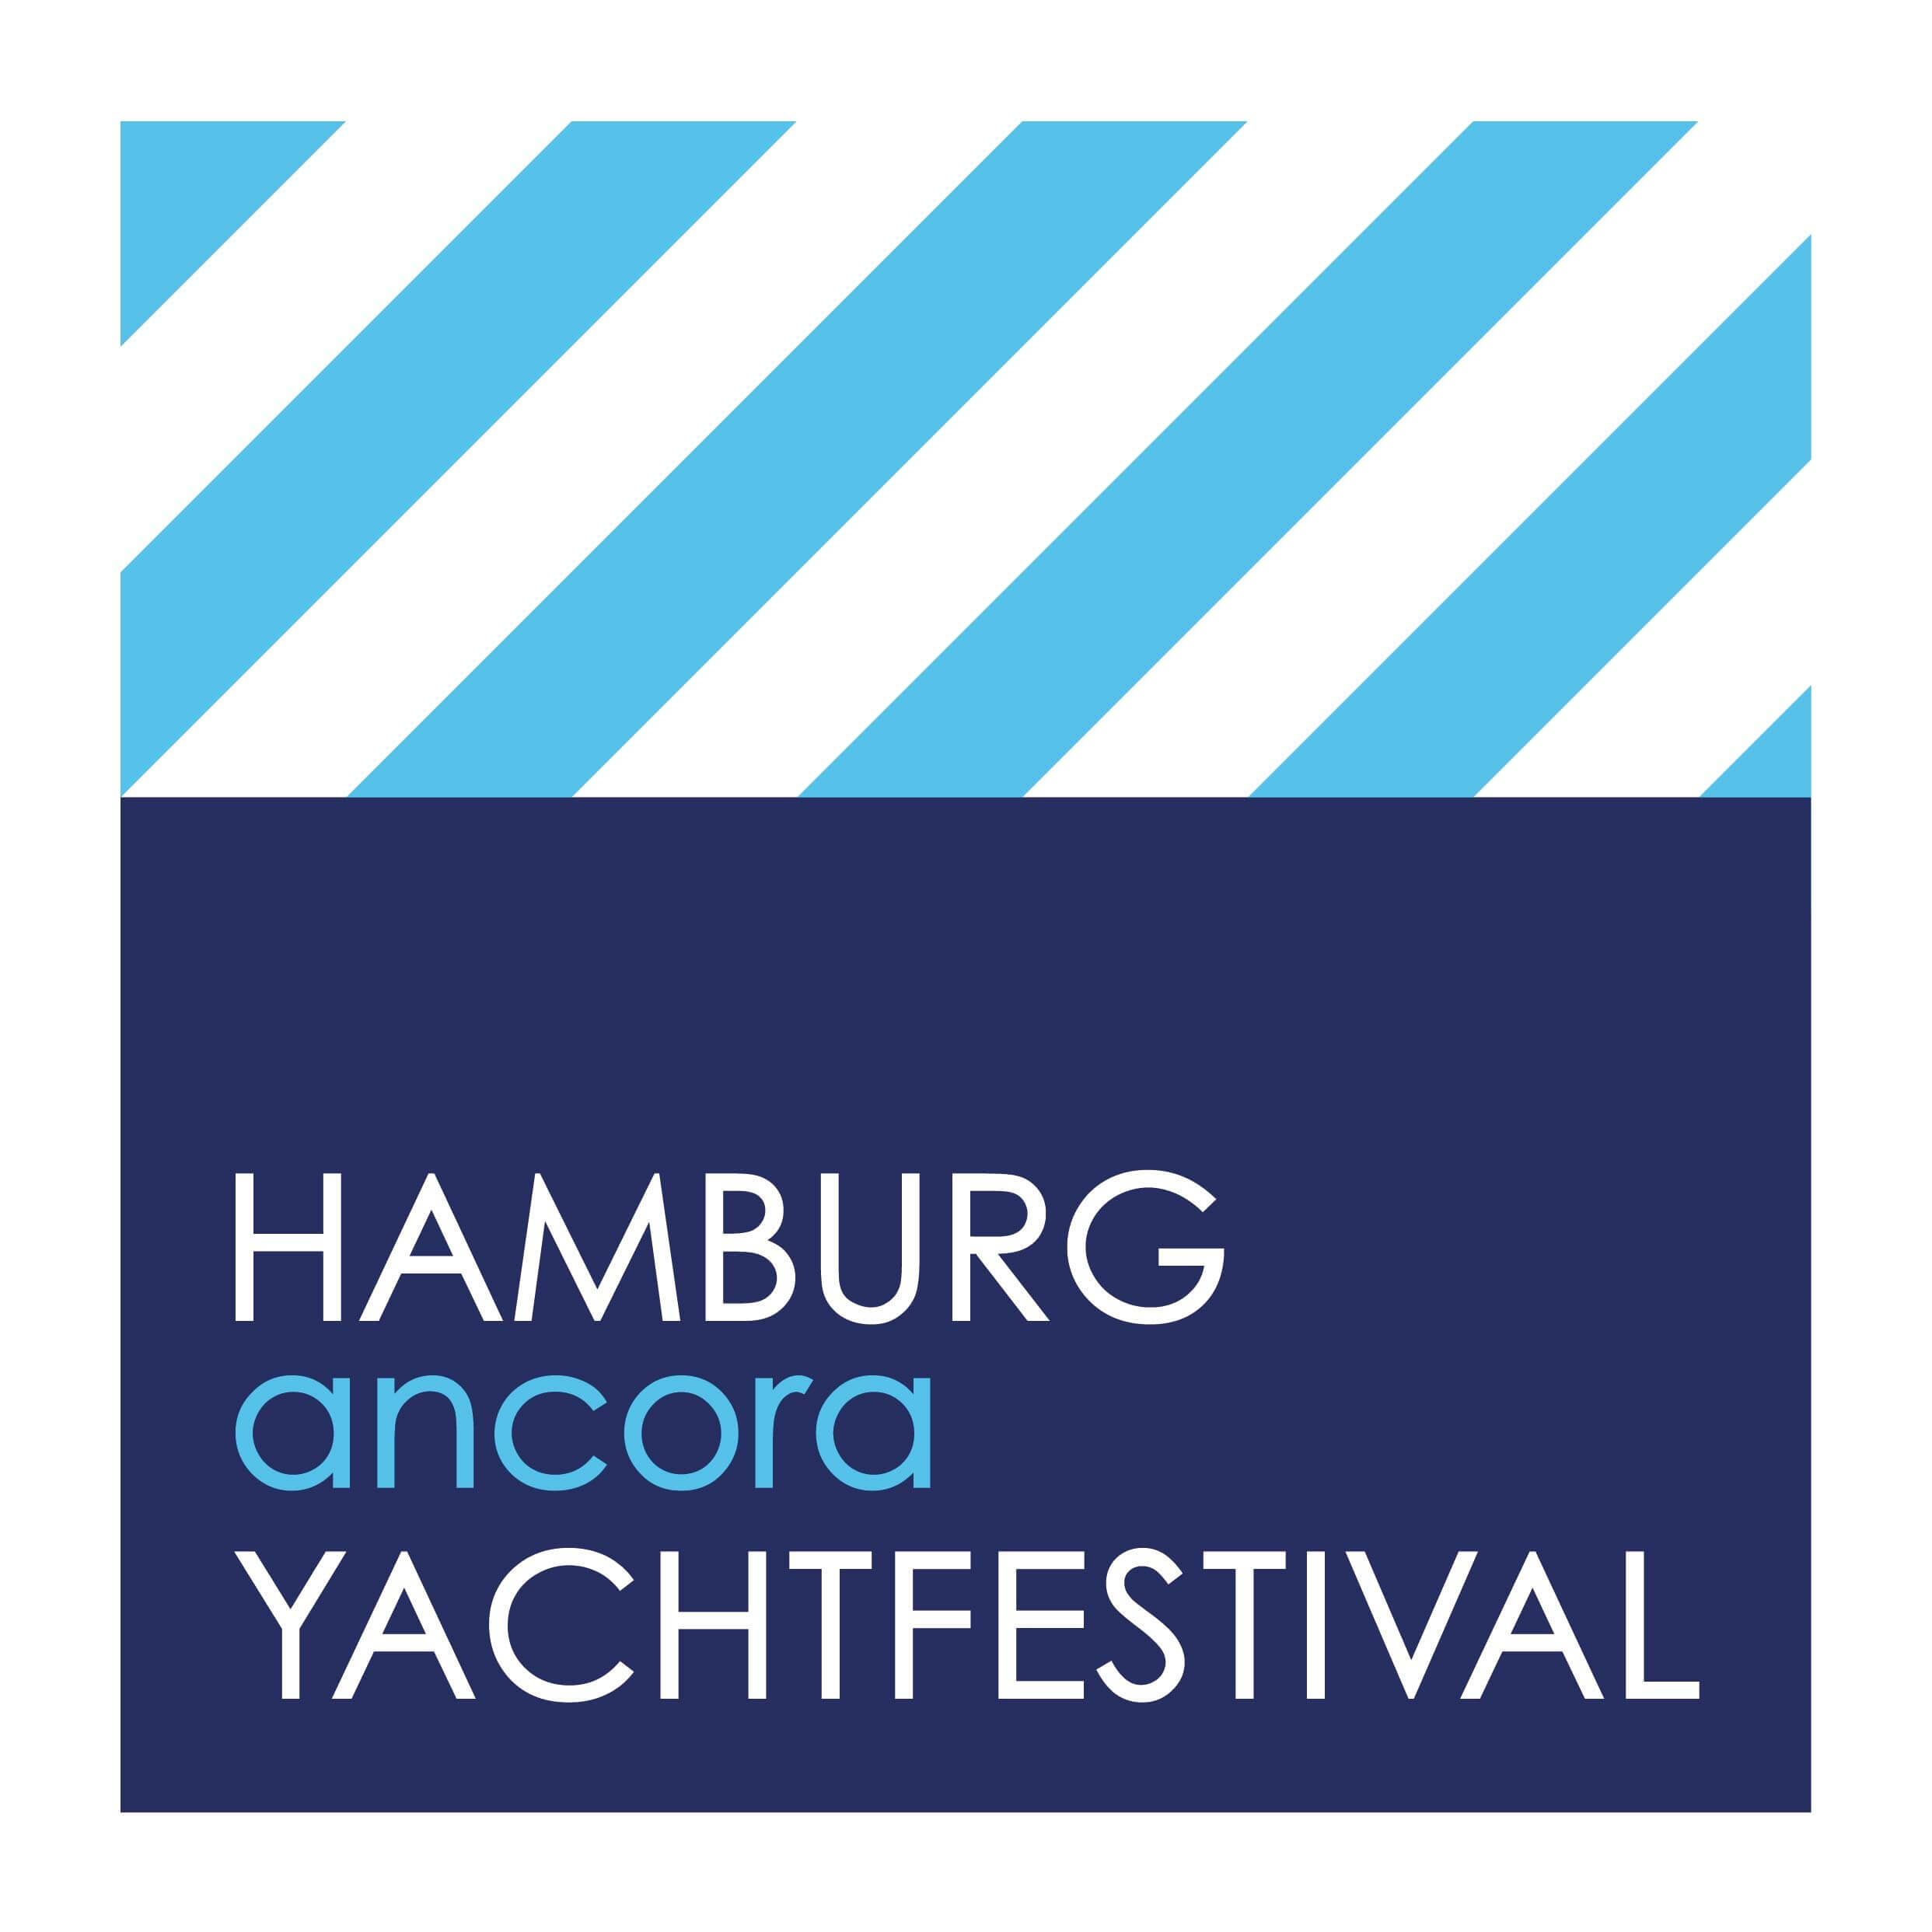 Hamburg ancora Yachtfestival 2023 - Sieckmann Yachts